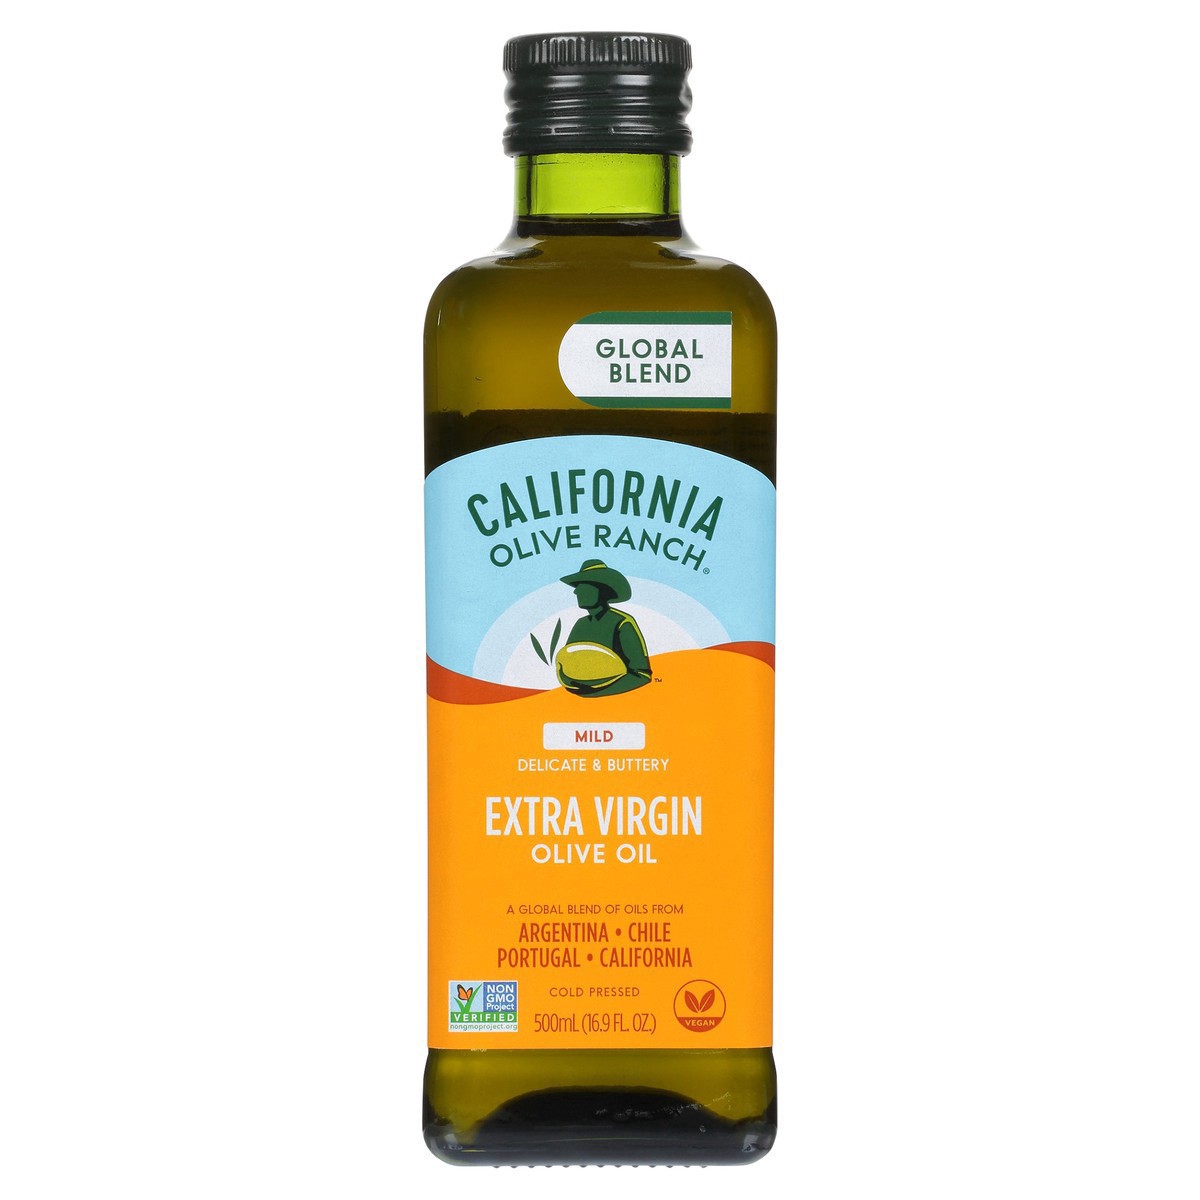 slide 16 of 21, California Olive Ranch Global Blend Mild Extra Virgin Olive Oil - 16.9 fl oz, 